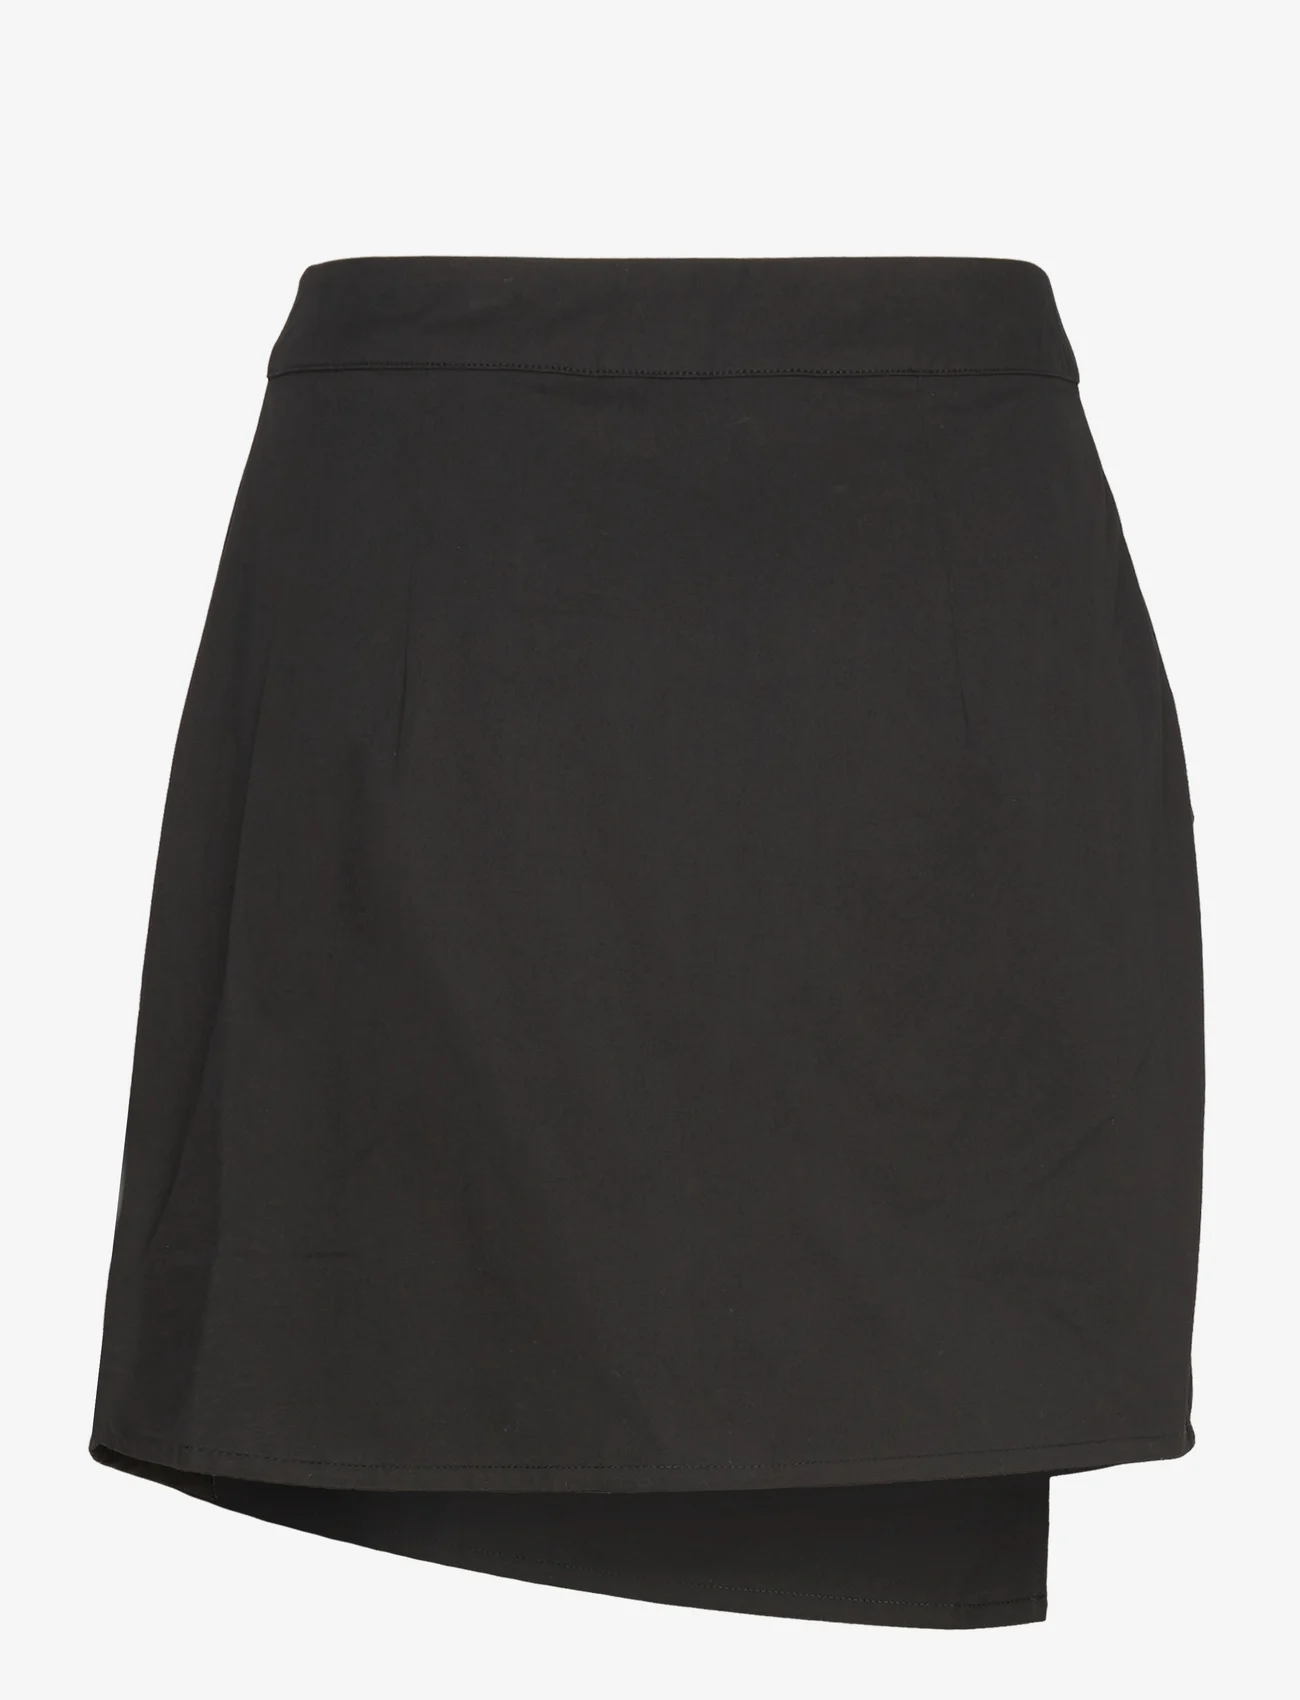 A-View - Calle new skirt - festtøj til outletpriser - black - 1